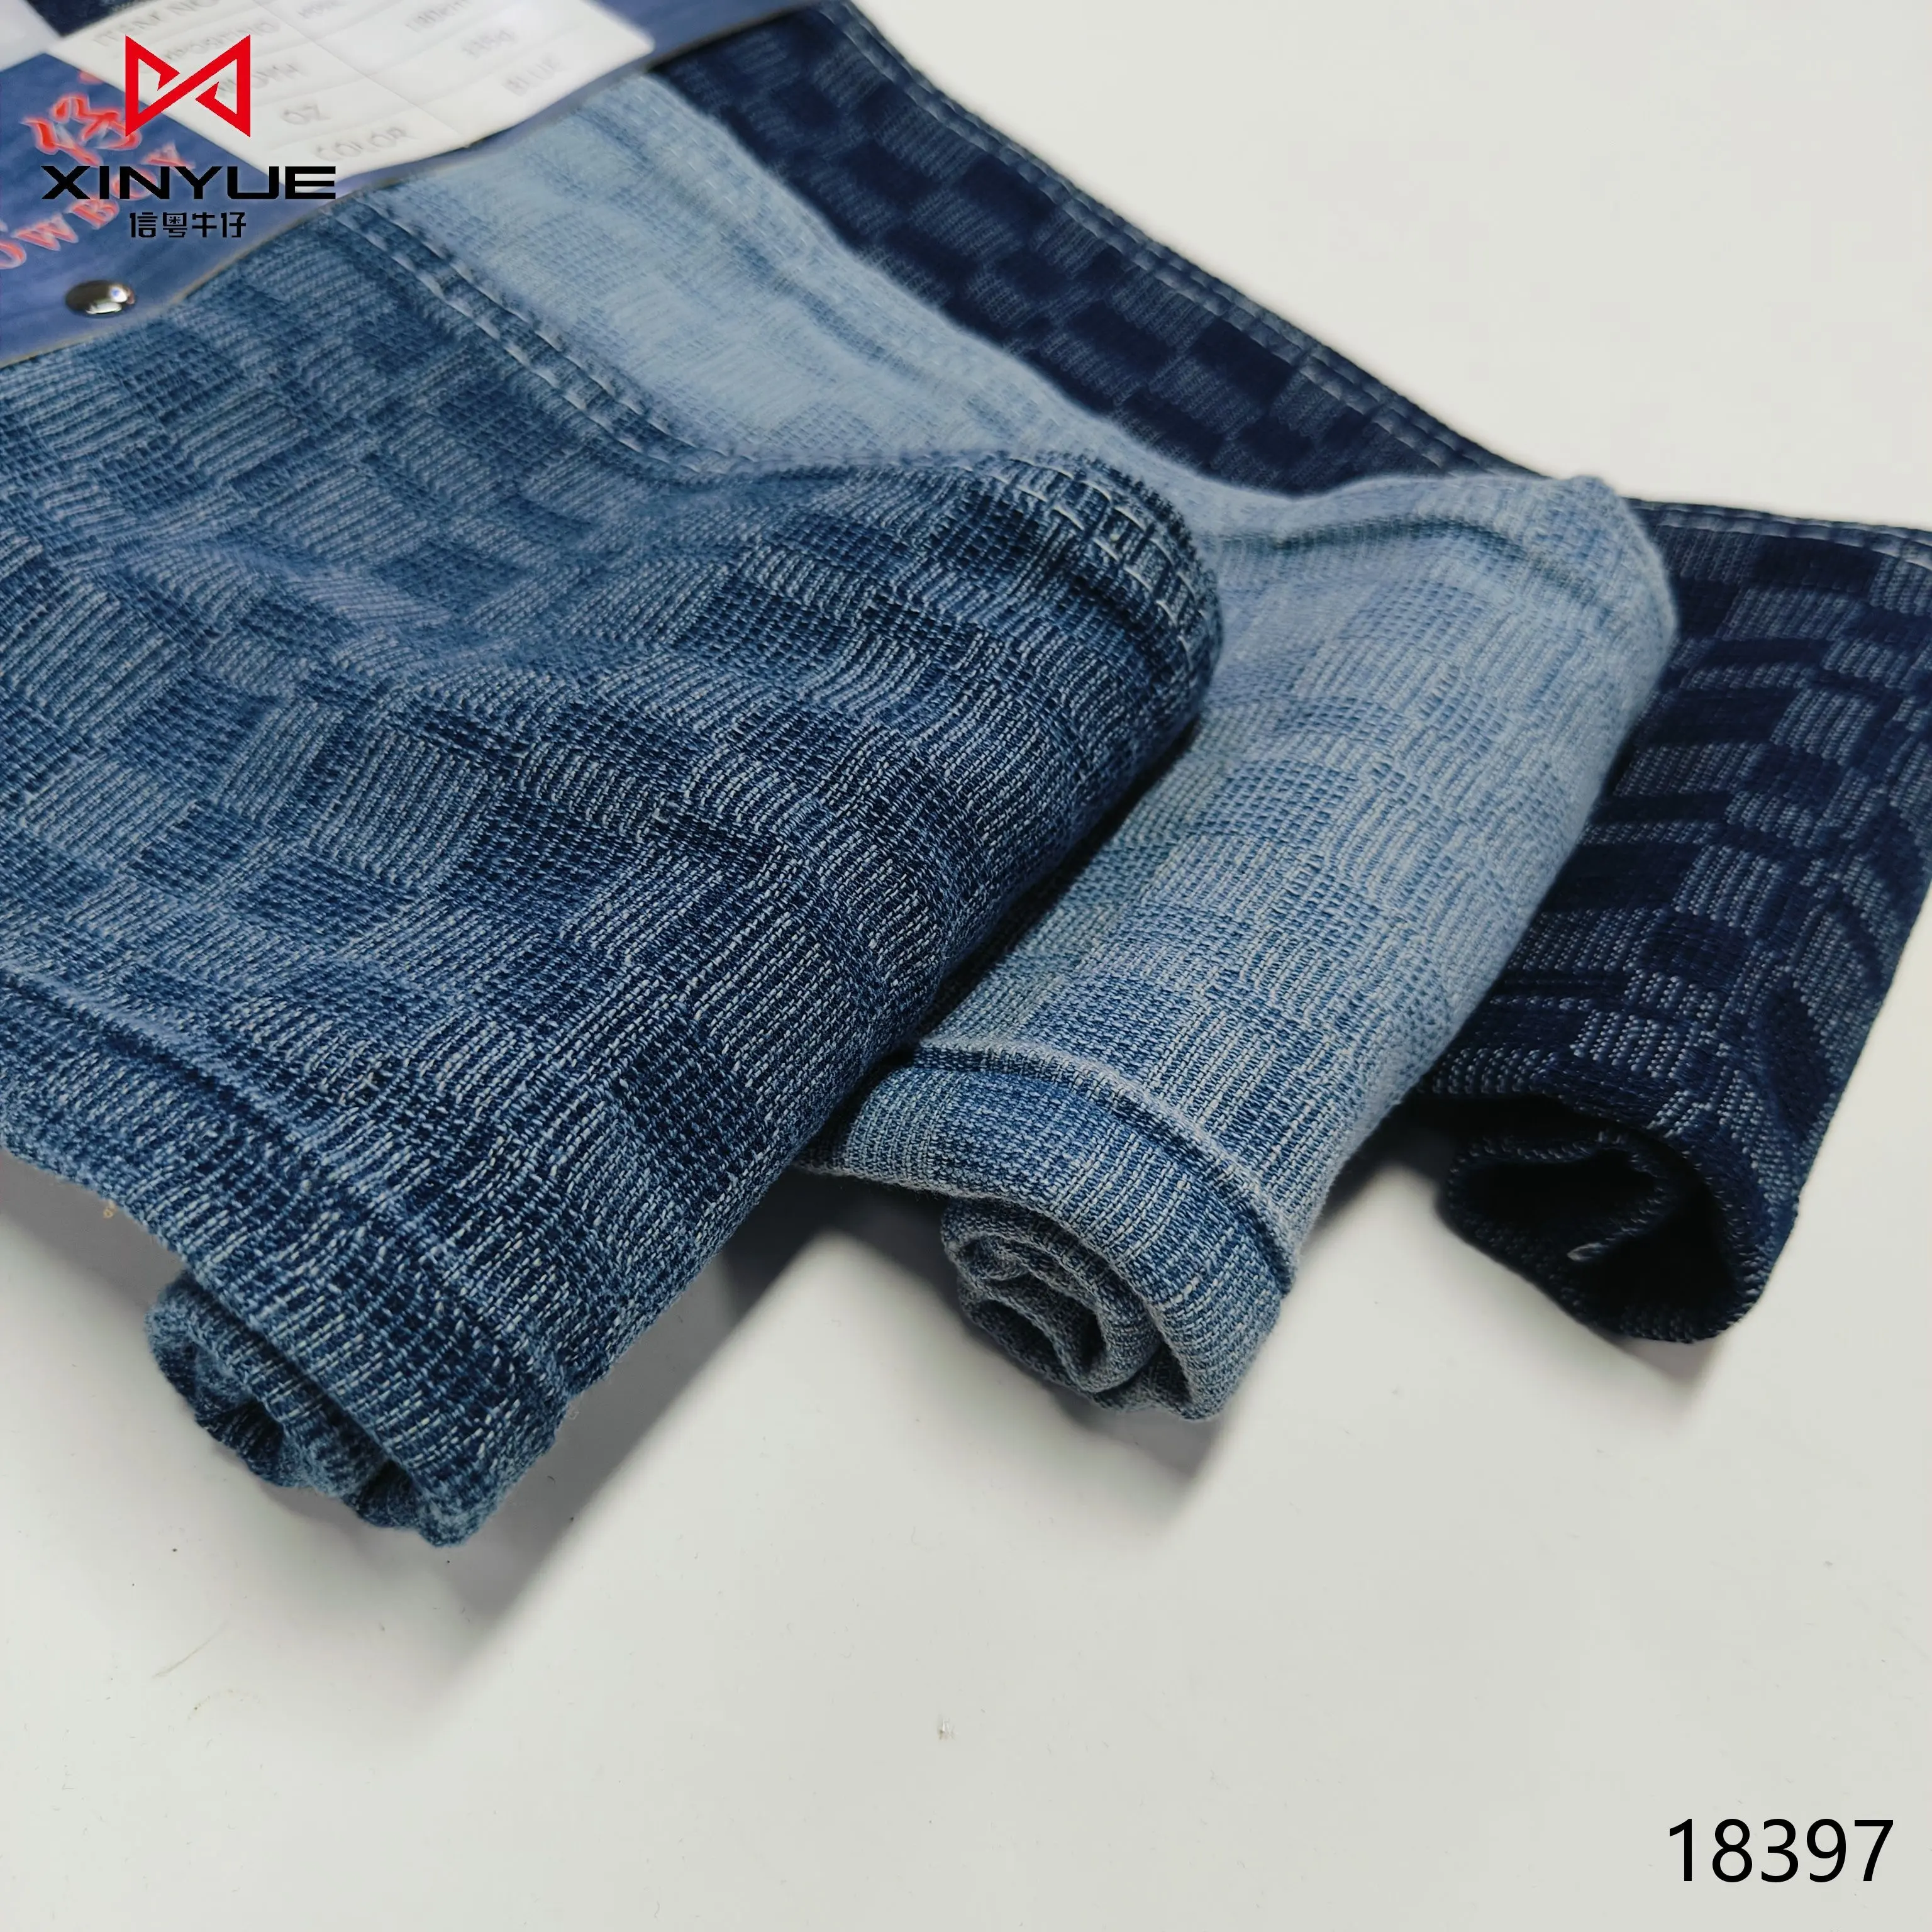 בד צבע אינדיגו לג'ינס ג'ינס בד לבגדים באיכות טובה 9.9 אוז בד ג'ינס אינדיגו ג'ינס